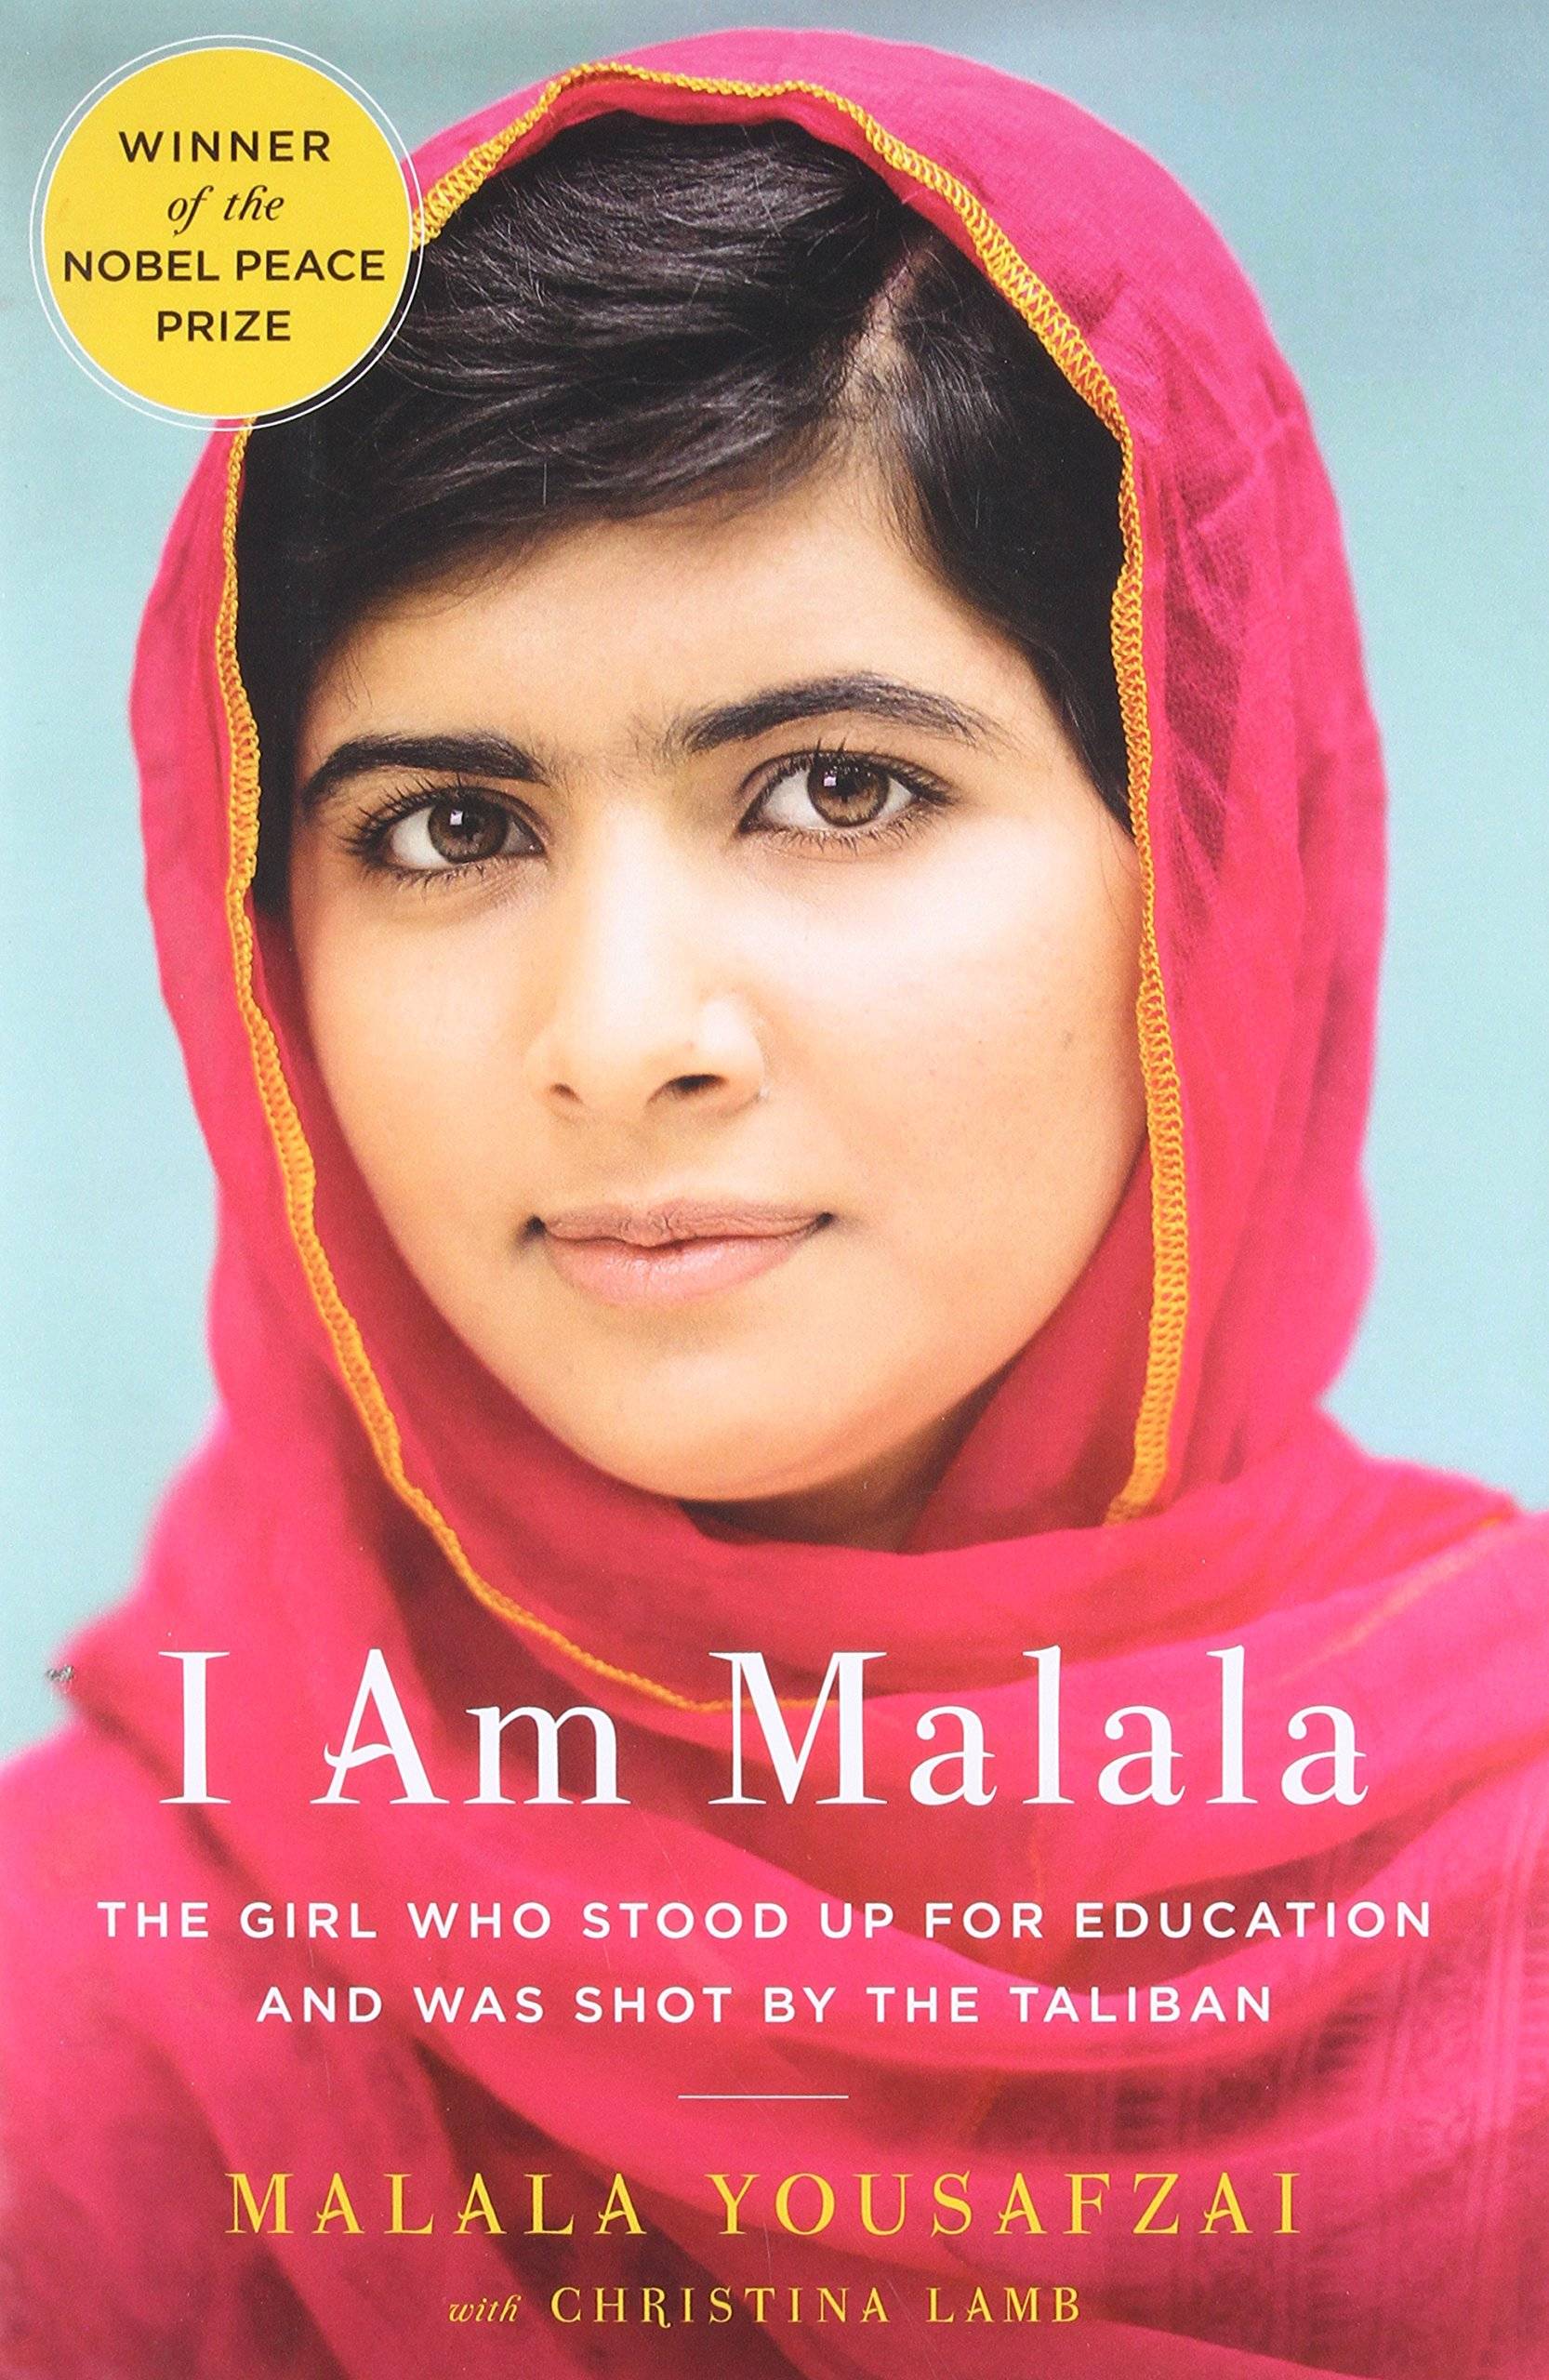 IMG : I Am Malala